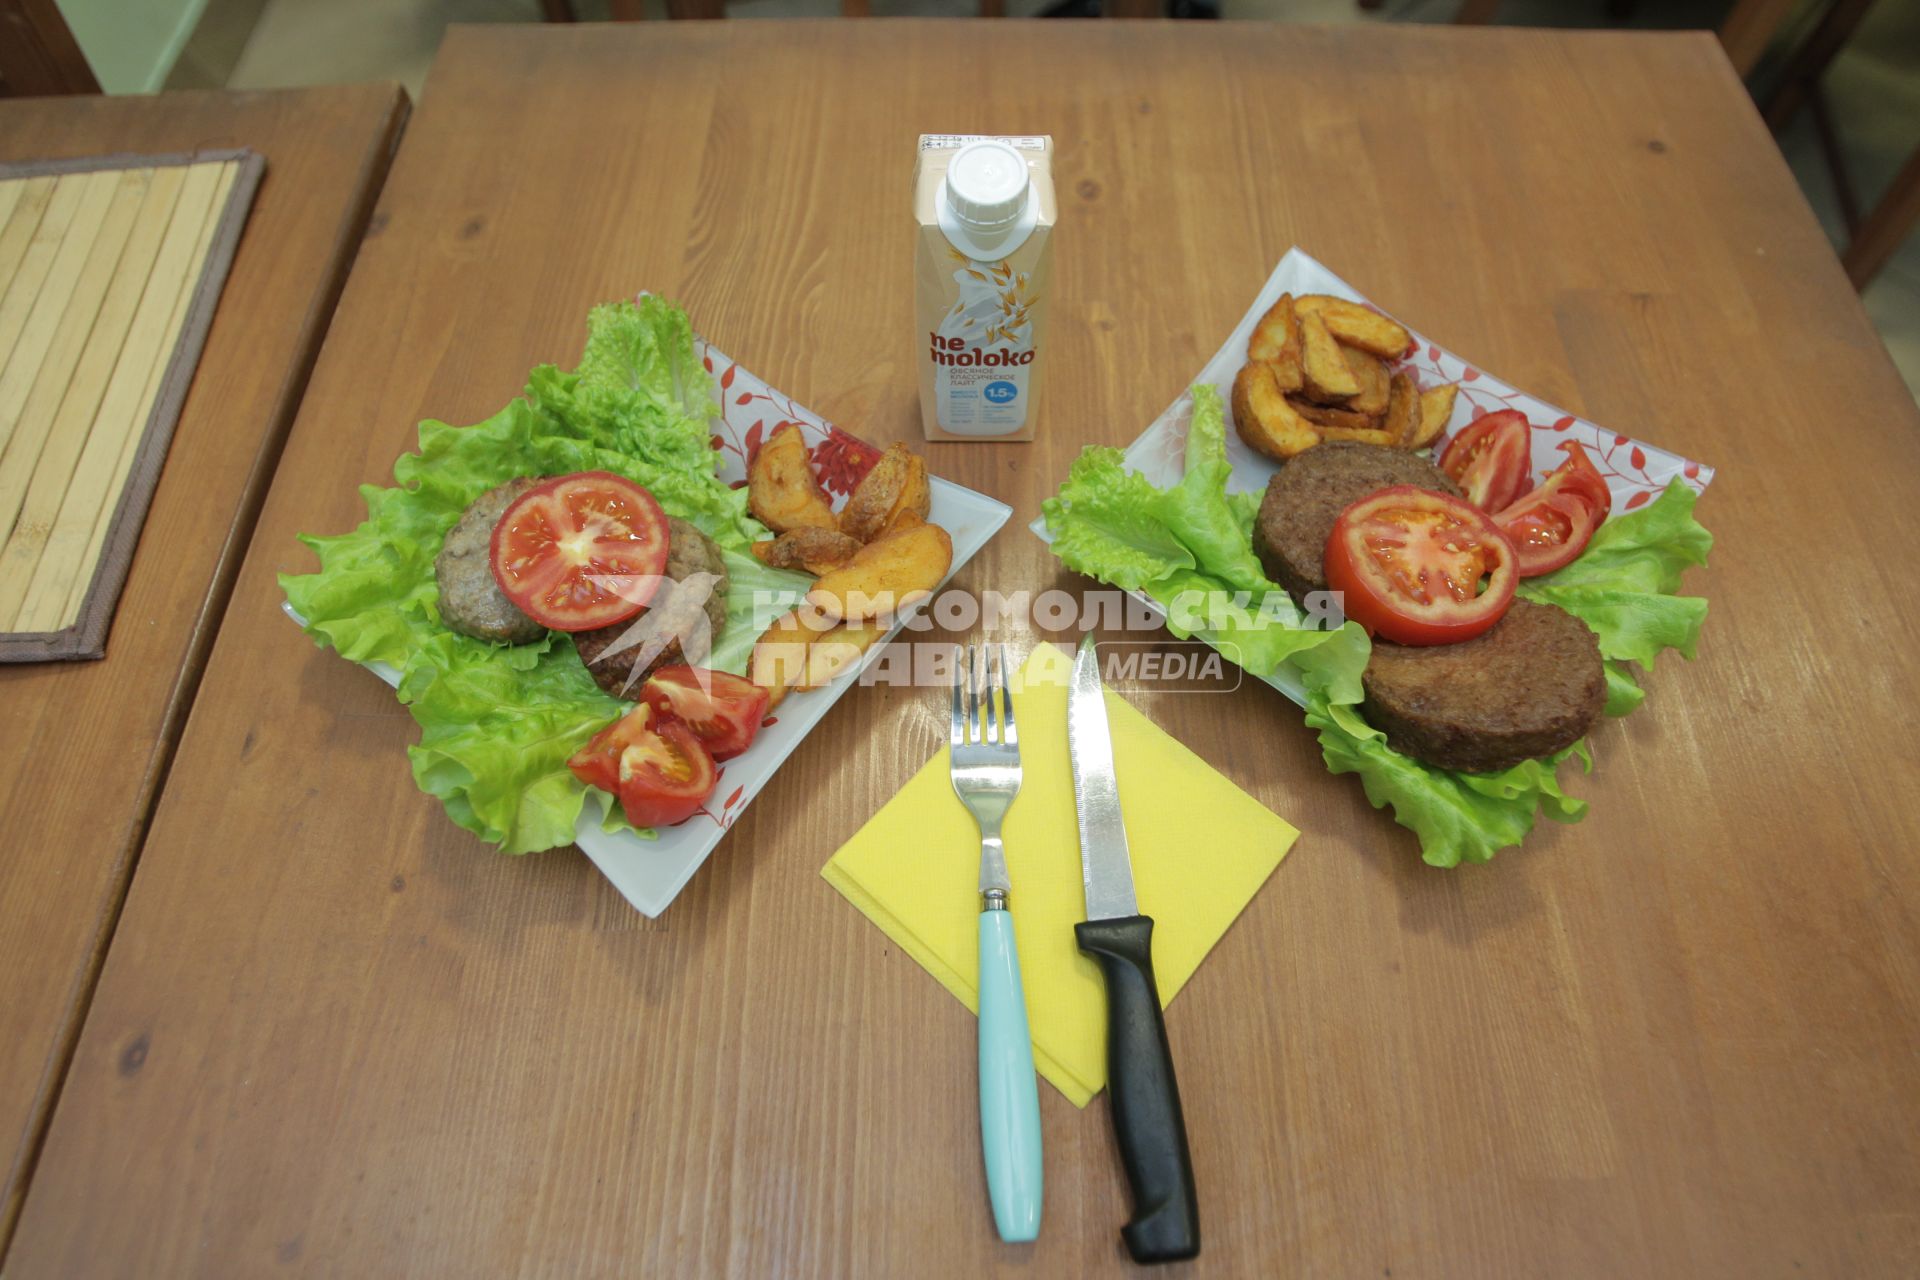 Москва.   Тарелки с искусственной едой на столе.